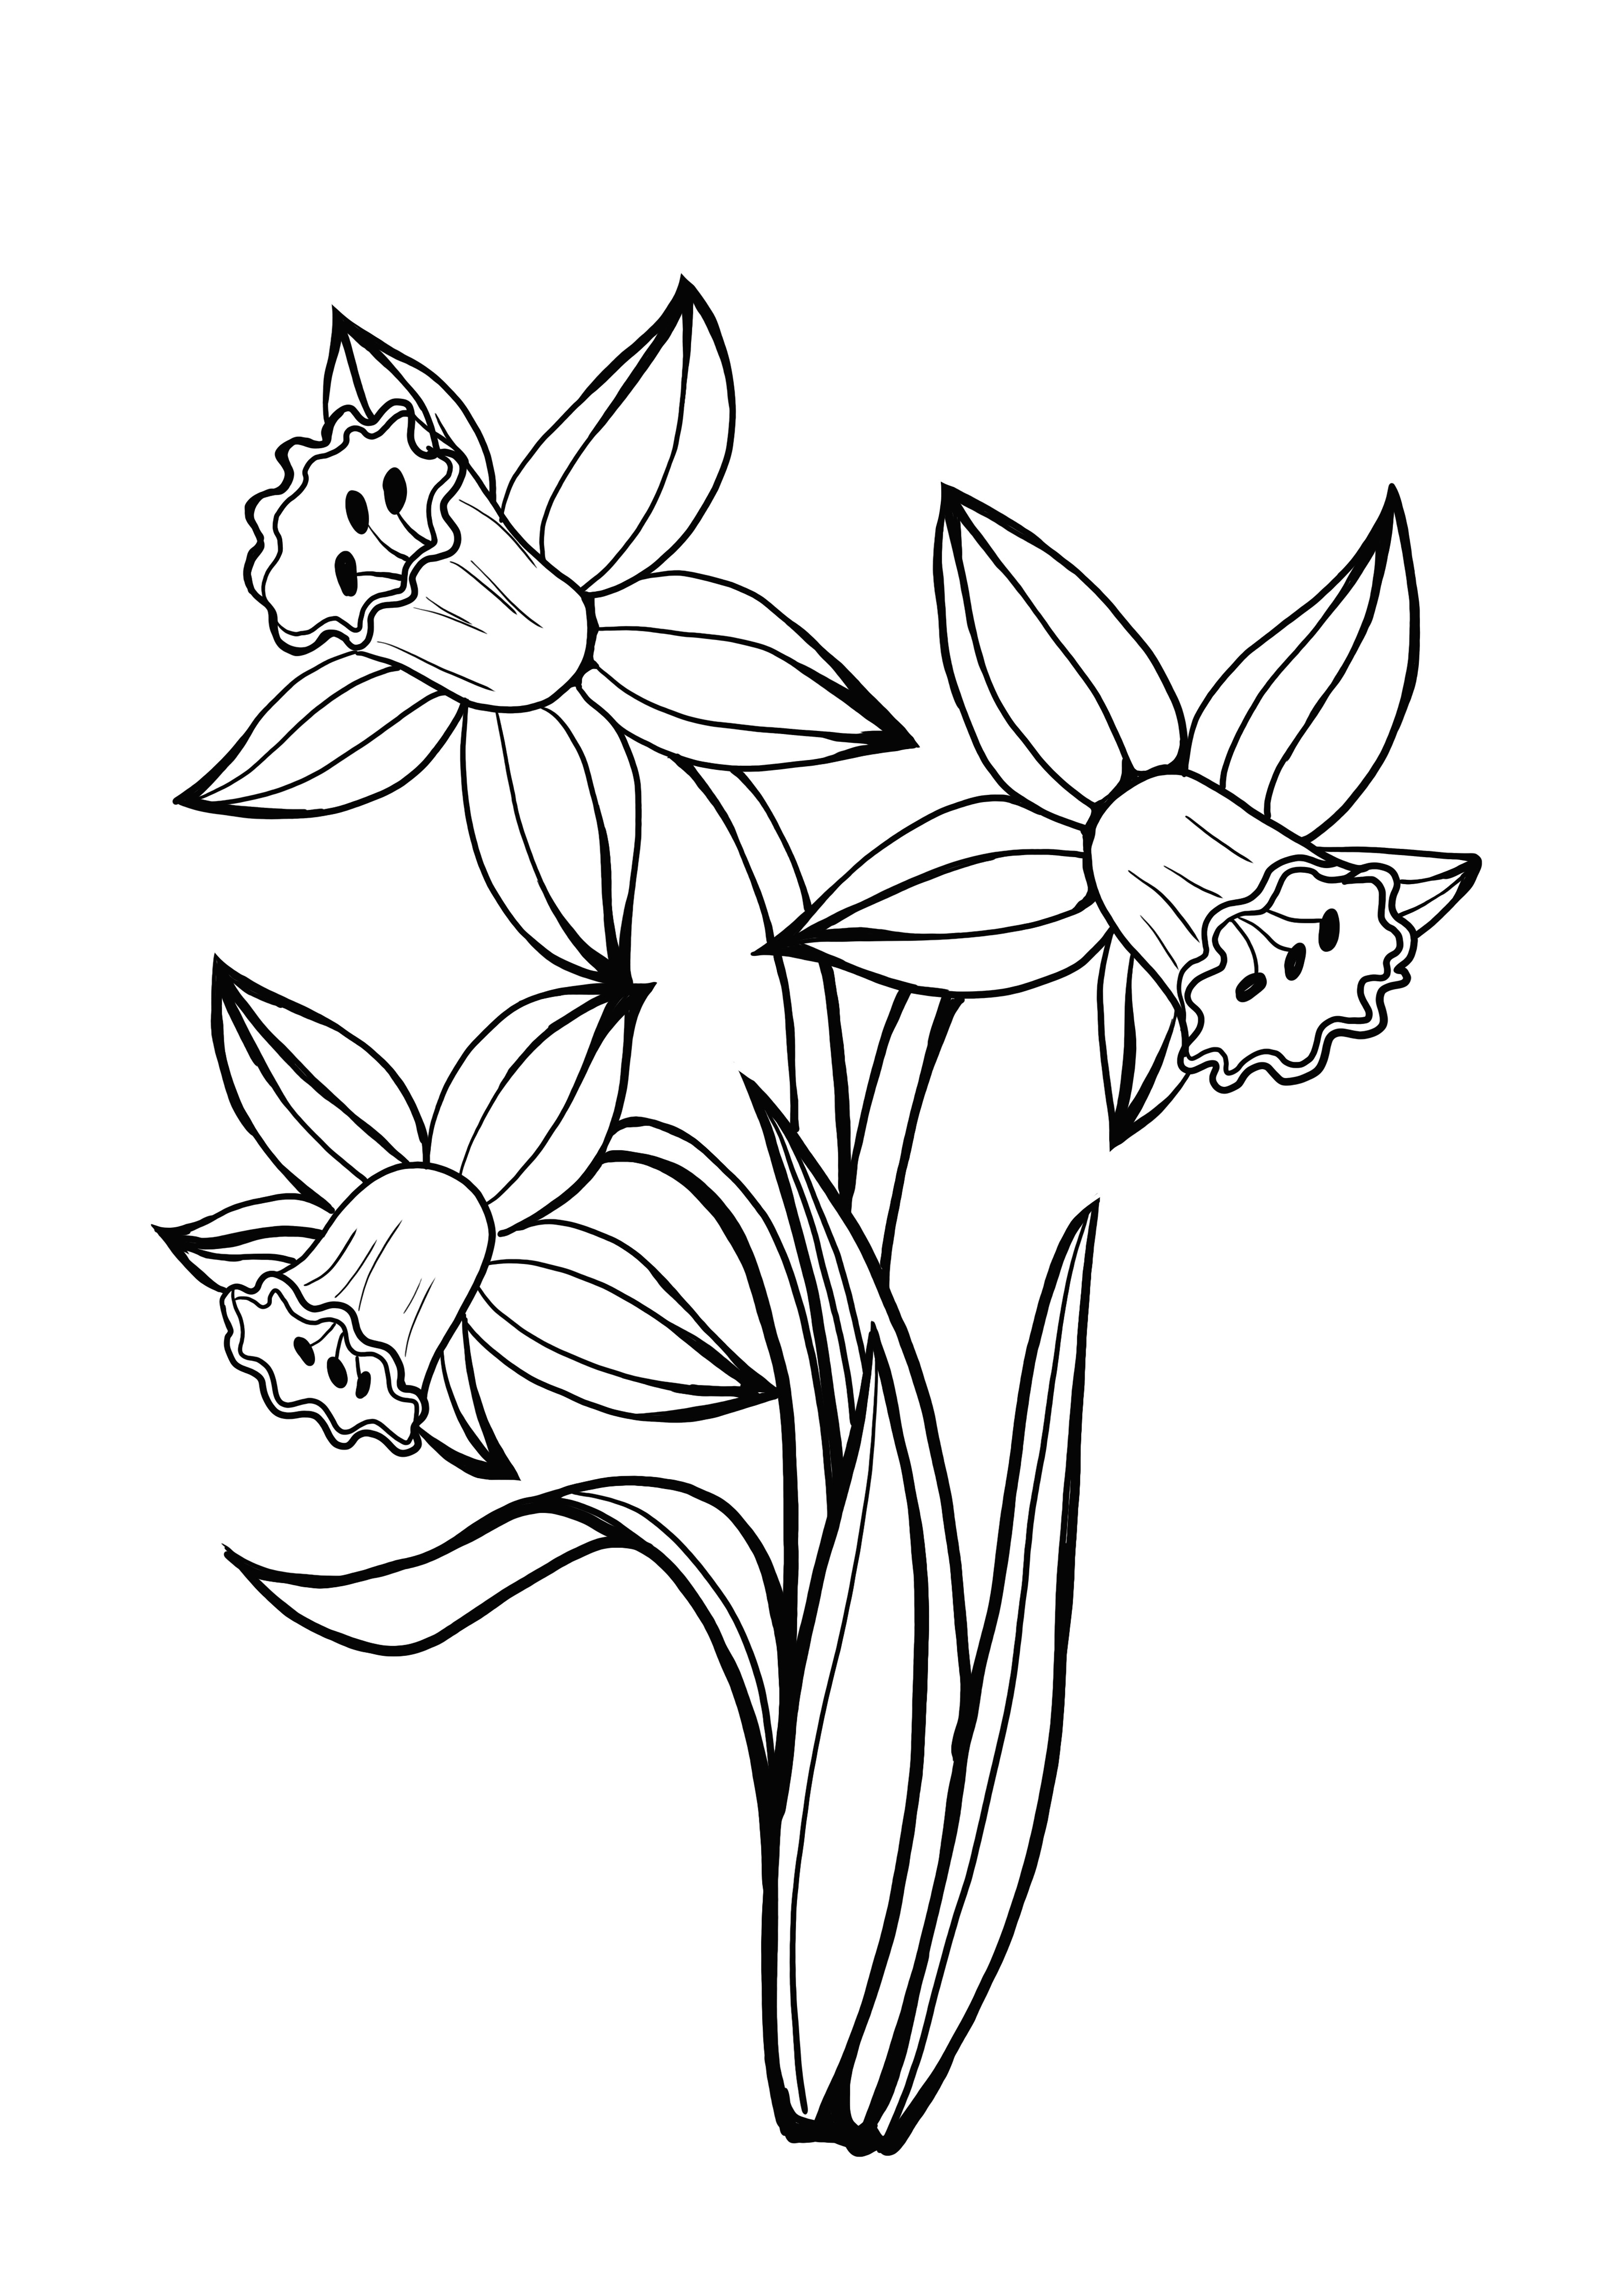 halaman mewarnai daffodil yang dapat dicetak gratis